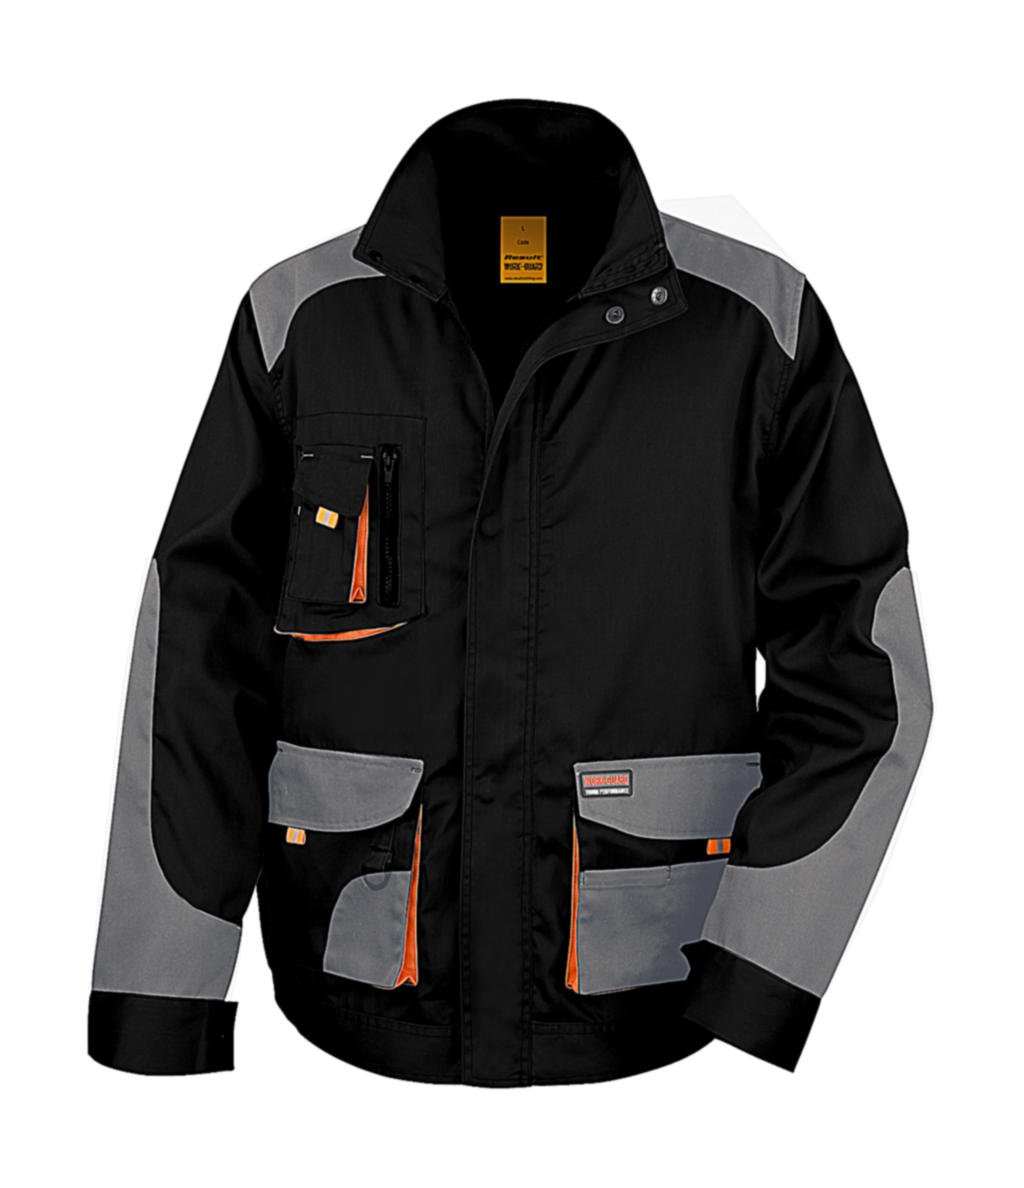  LITE Jacket in Farbe Black/Grey/Orange